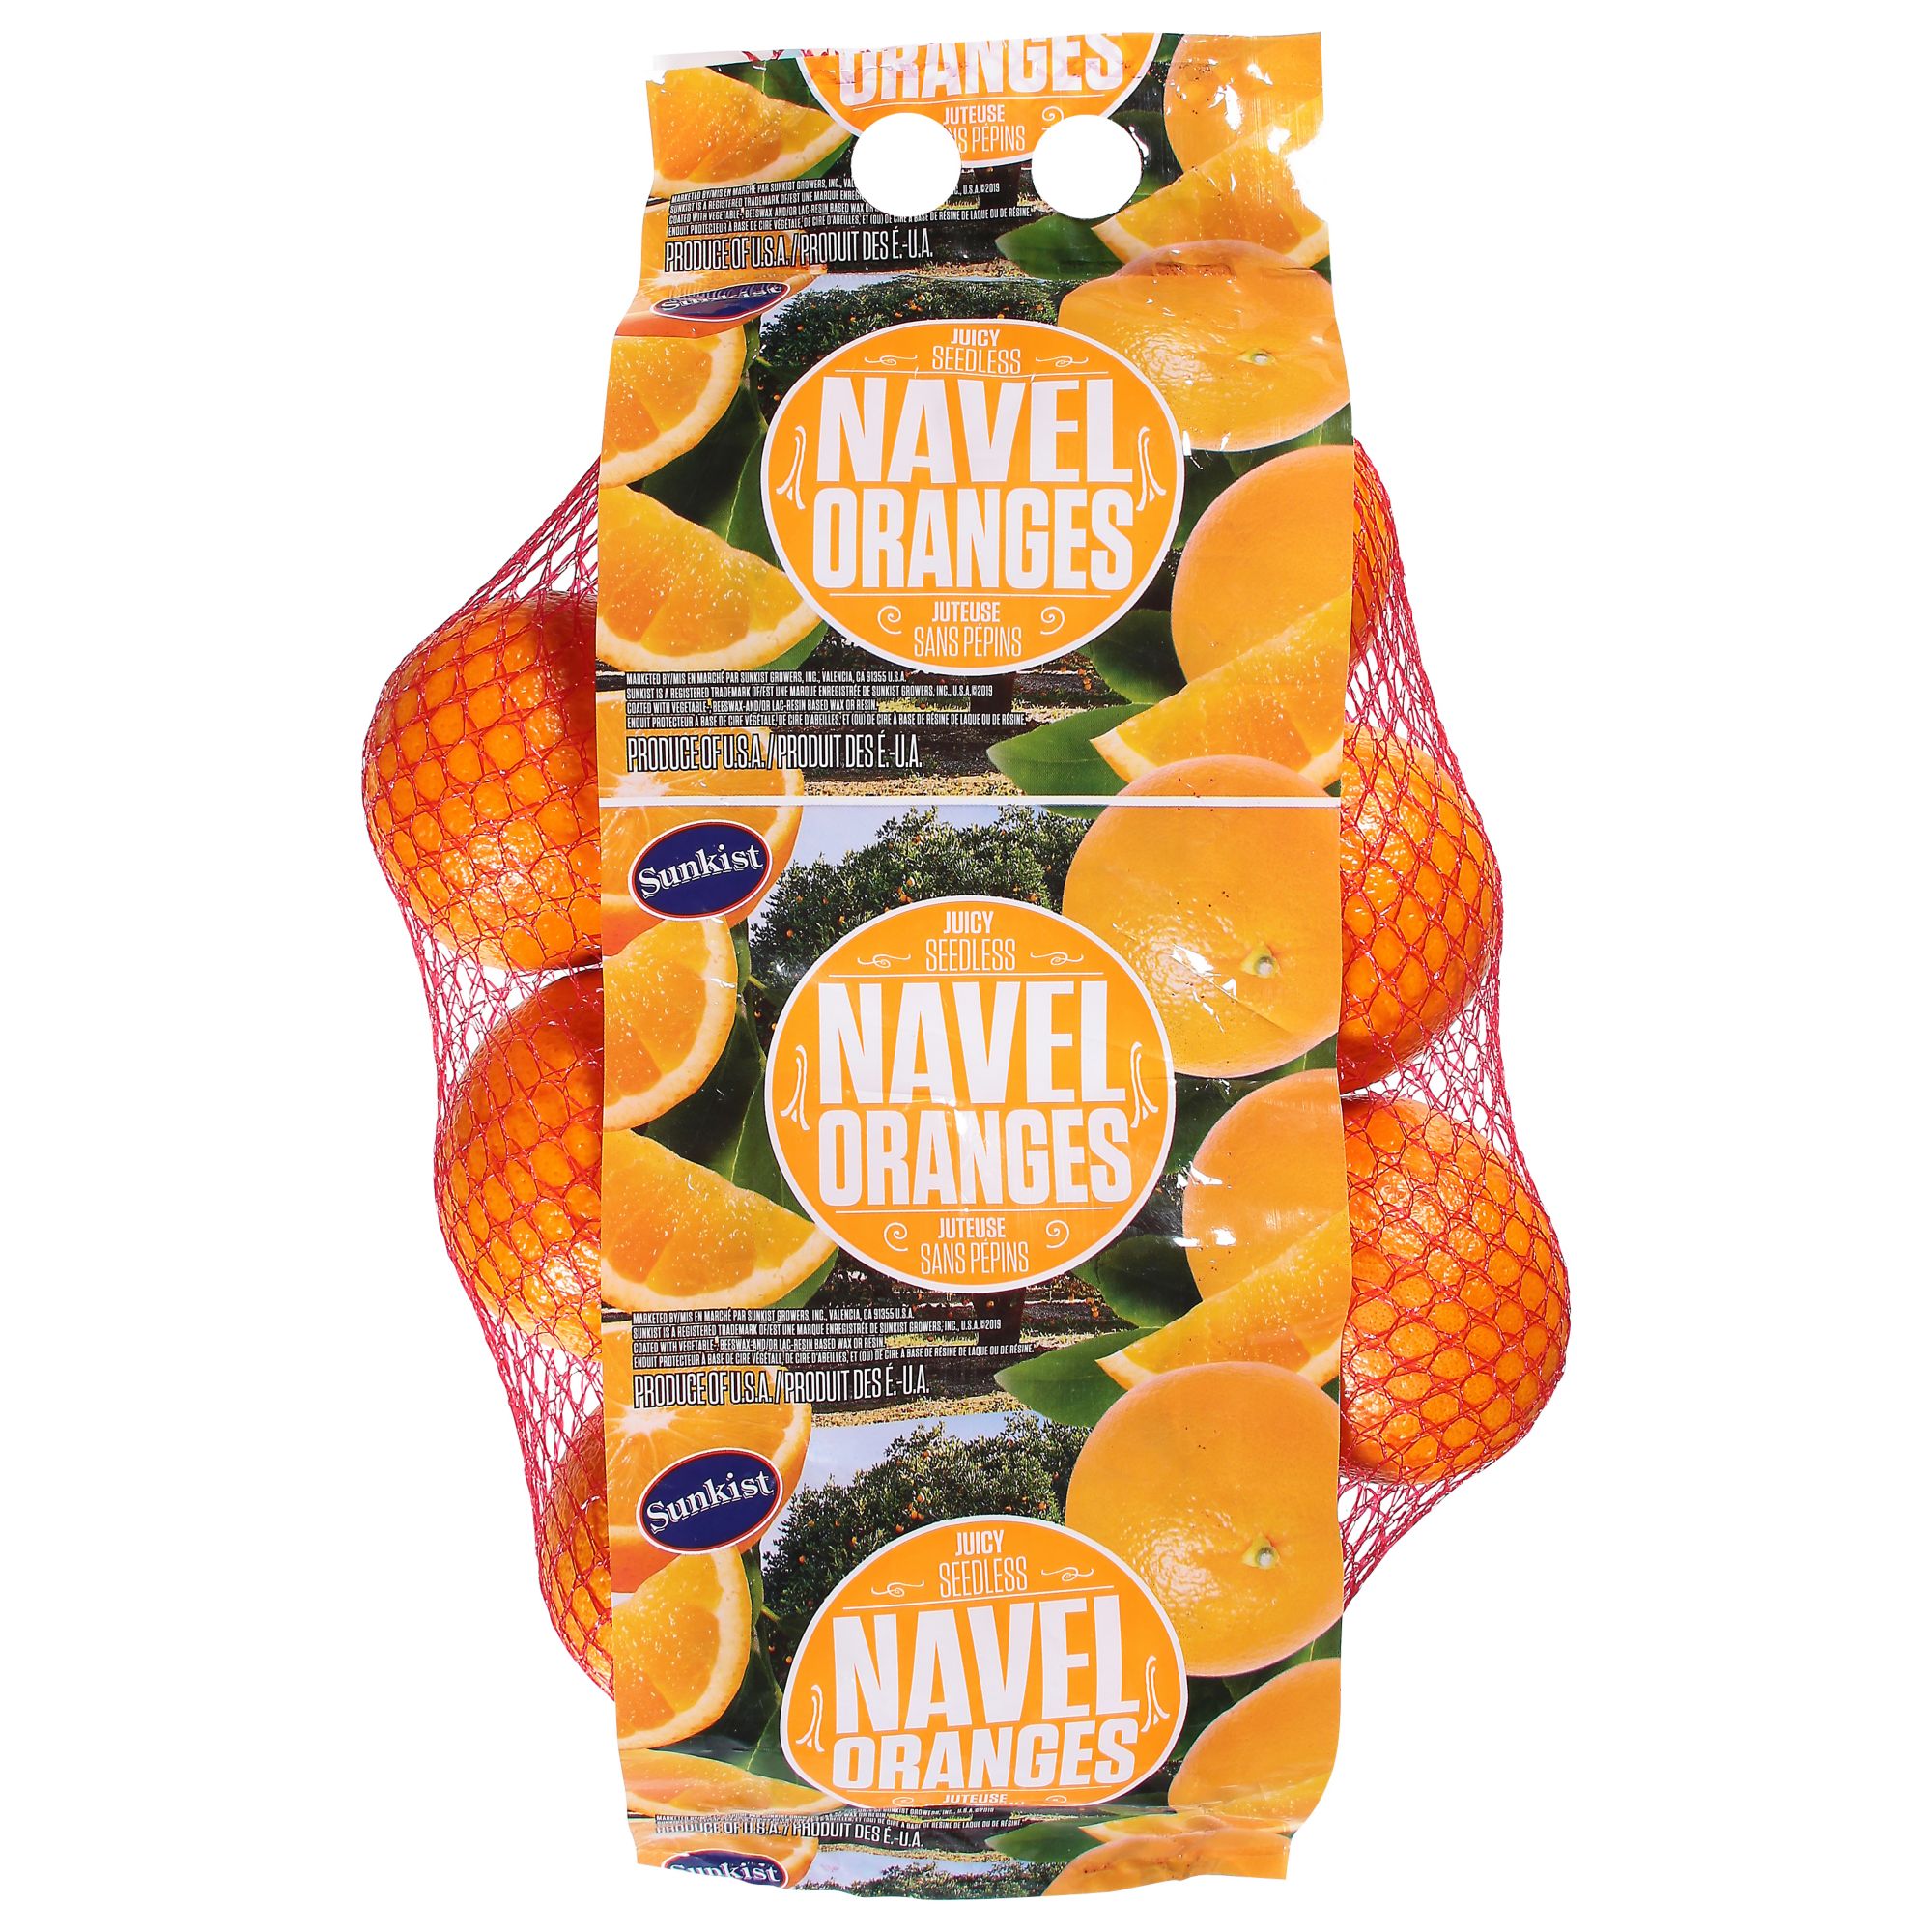 Save on Florida Navel Orange Order Online Delivery